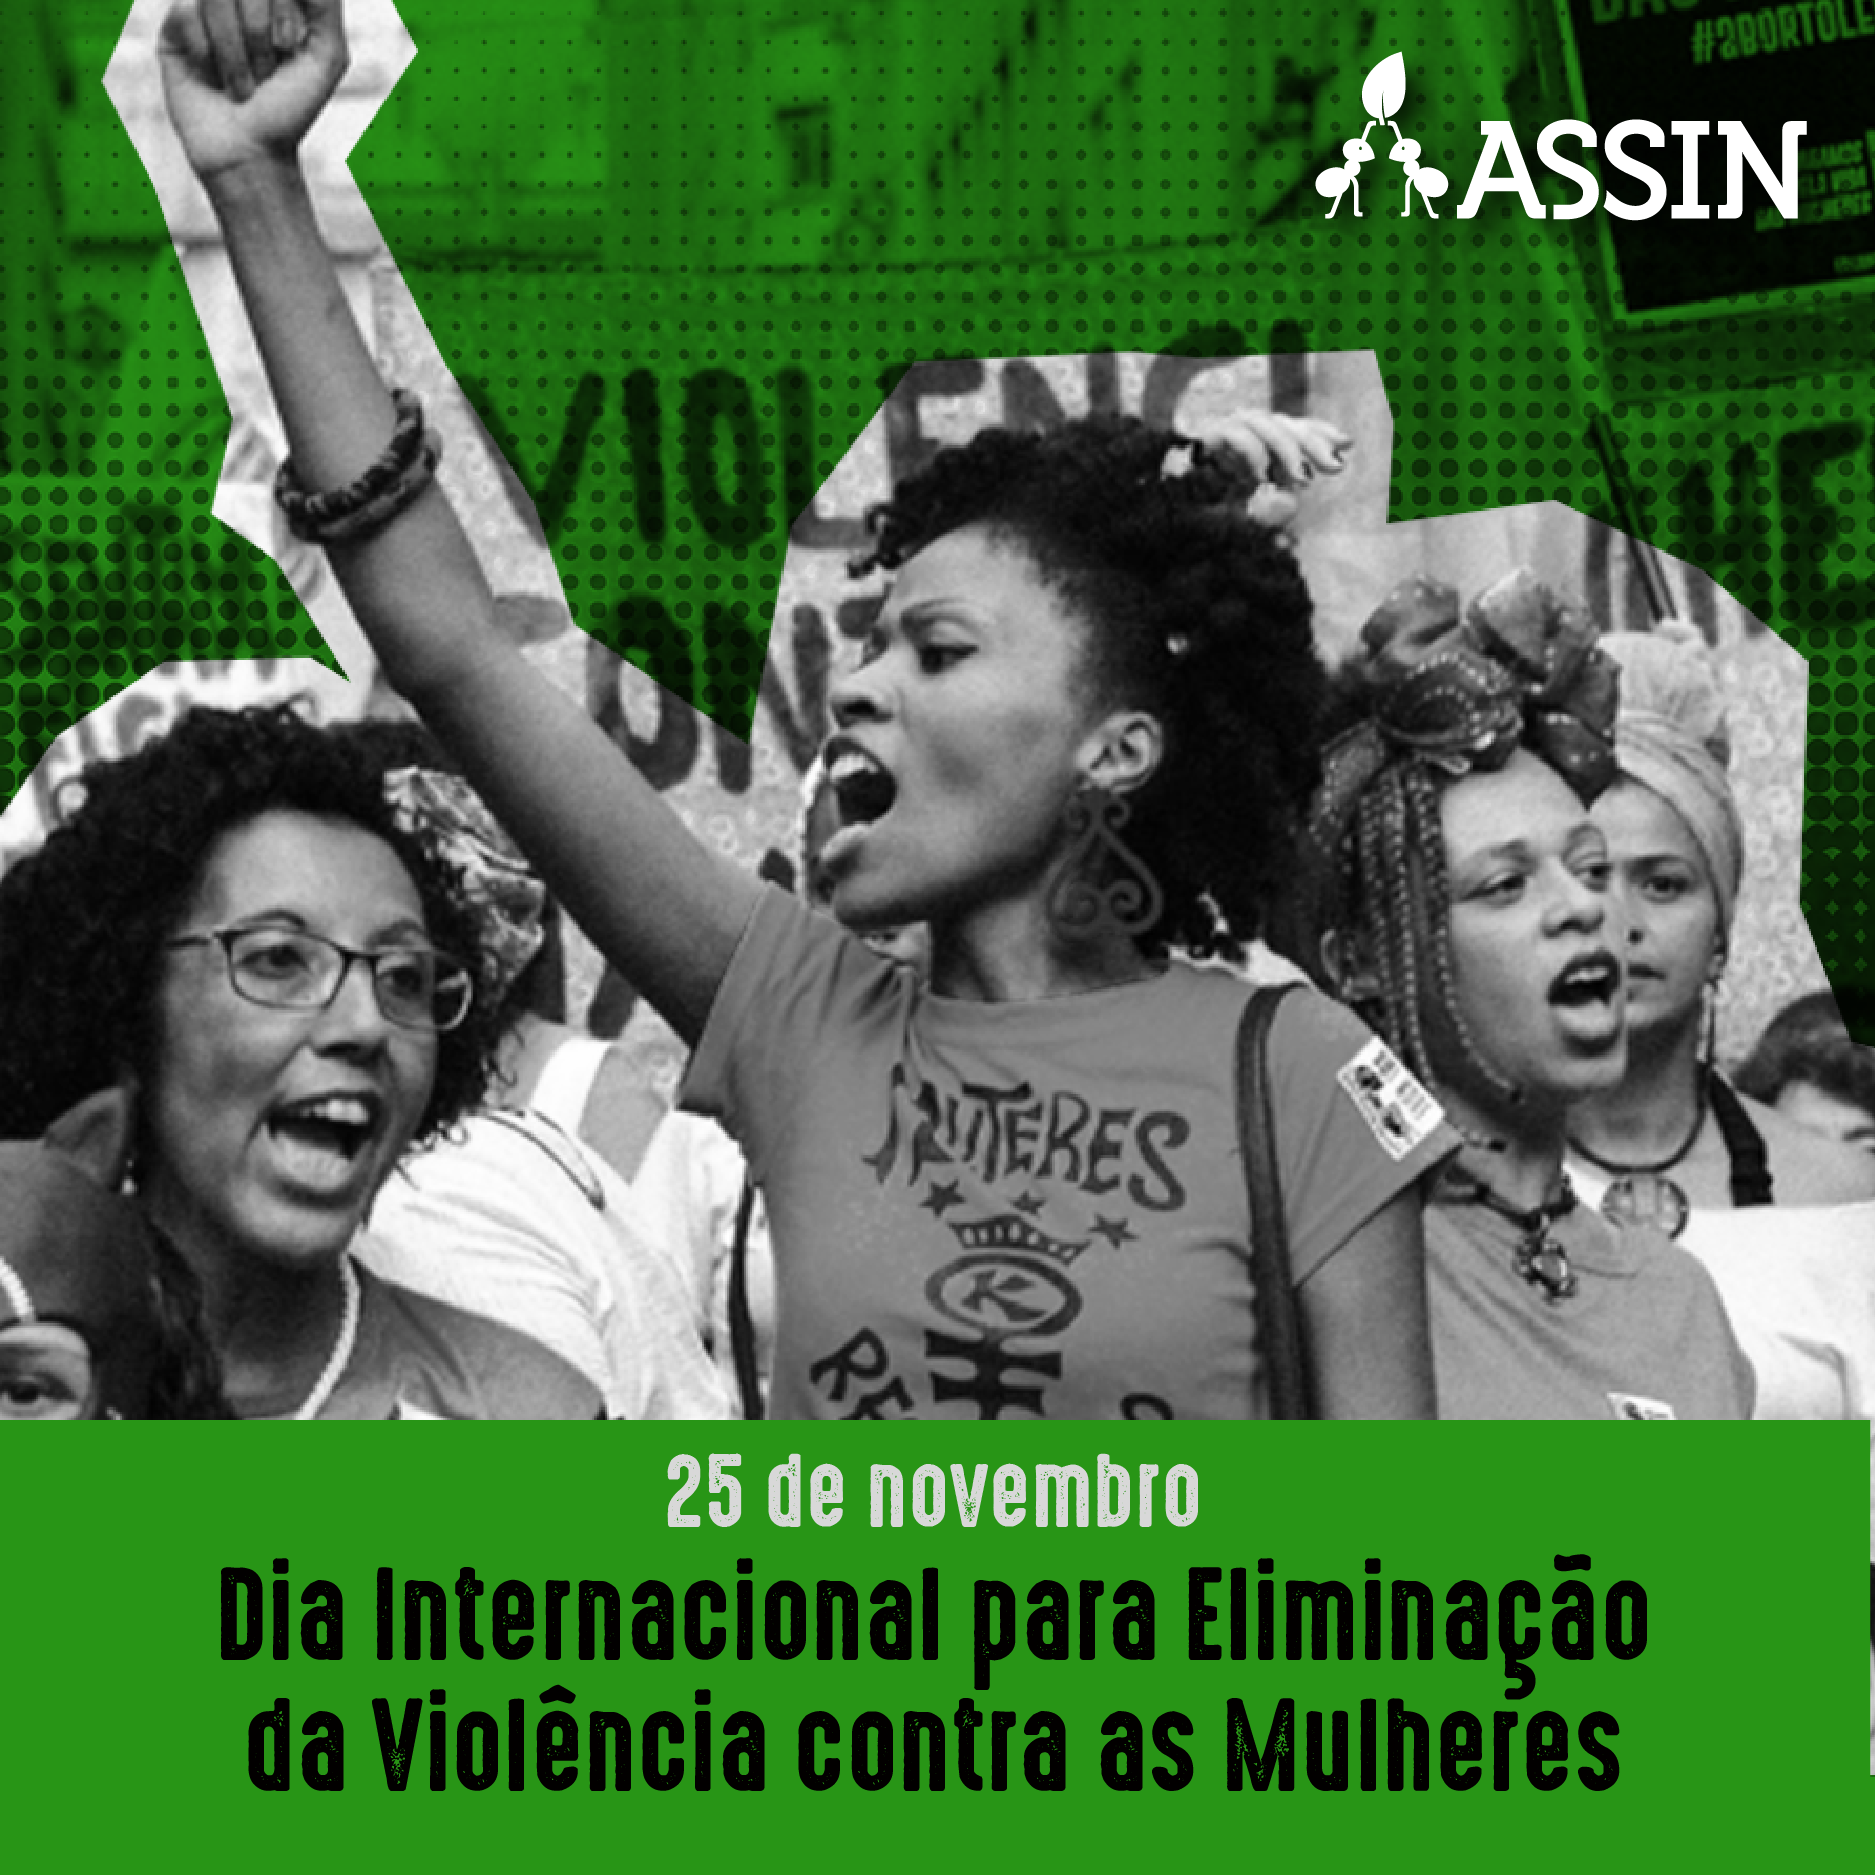 Dia Internacional para Eliminação da Violência contras as Mulheres: o que você pode fazer para contribuir?